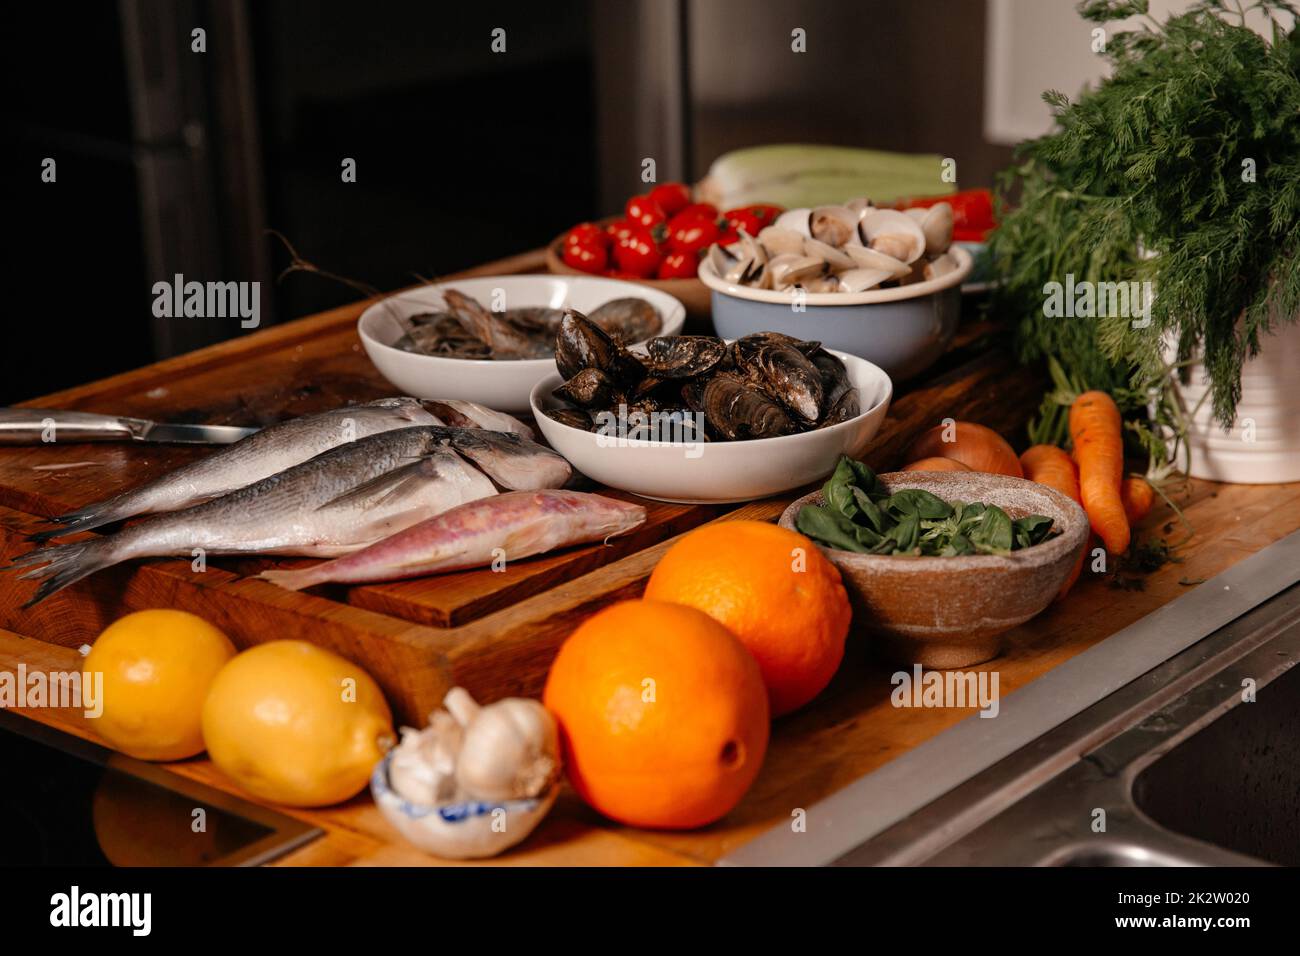 Orate di mare e conchiglie sul tavolo accanto a verdure e frutta. Ingredienti per preparare una deliziosa zuppa. Foto Stock